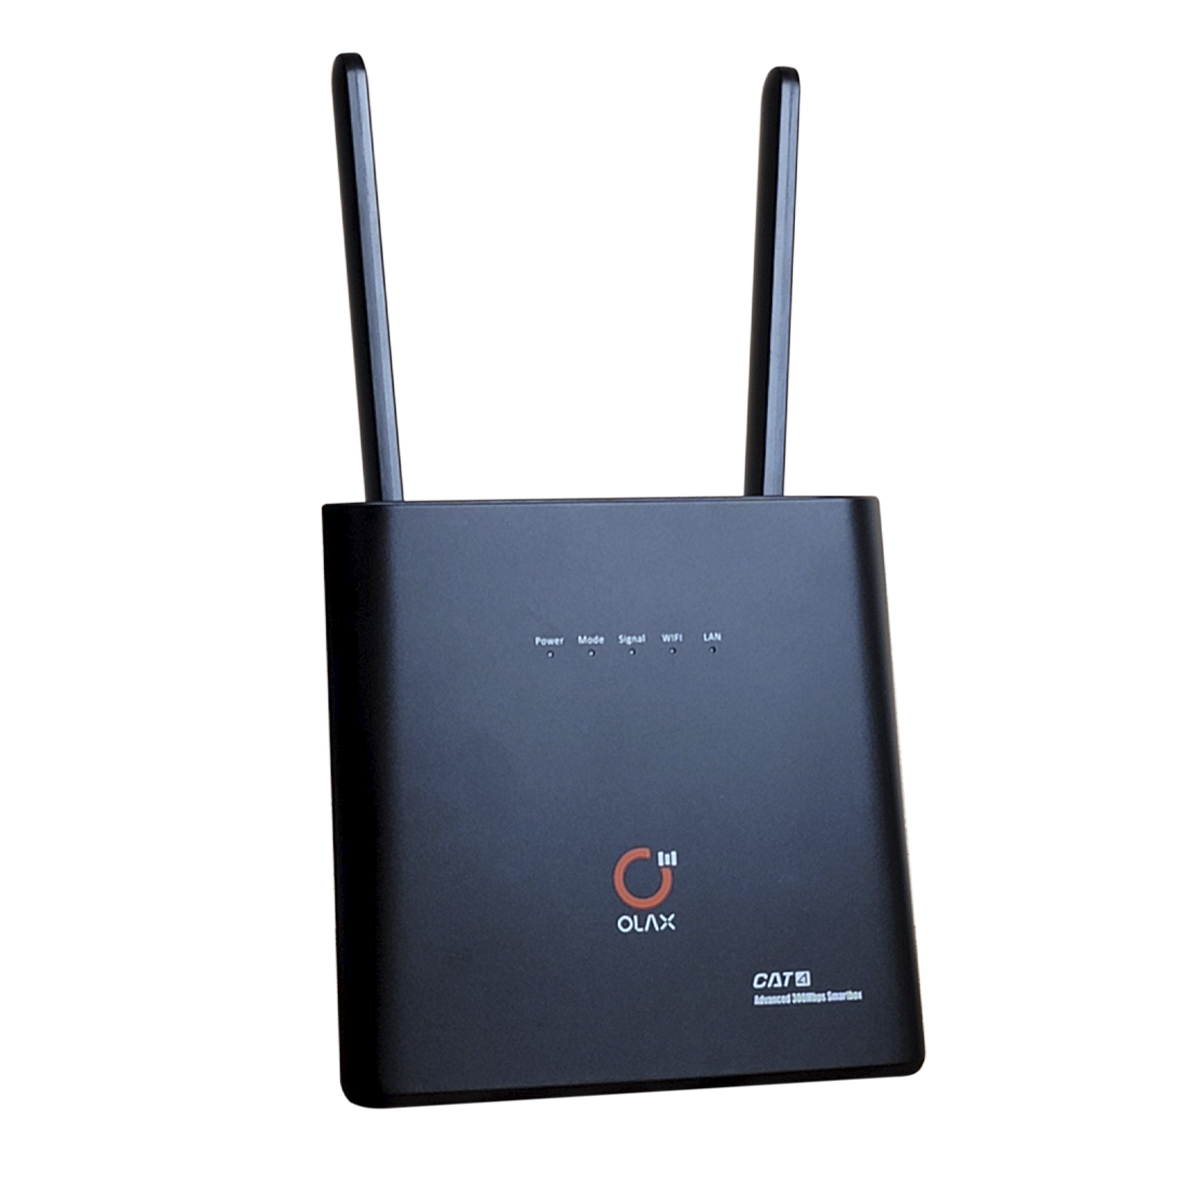 Самый лучший 4G Wi-Fi роутер Olax AX9 Pro с АКБ 4000 МаЧ 4G интернета для дачи, села, частного дома, для квартиры. Скорость 3G интернета (до 42 Мбит/с), 4G интернет (до 300 Мбит/с). Купить 4G роутер с антенной на сайте Marketnet